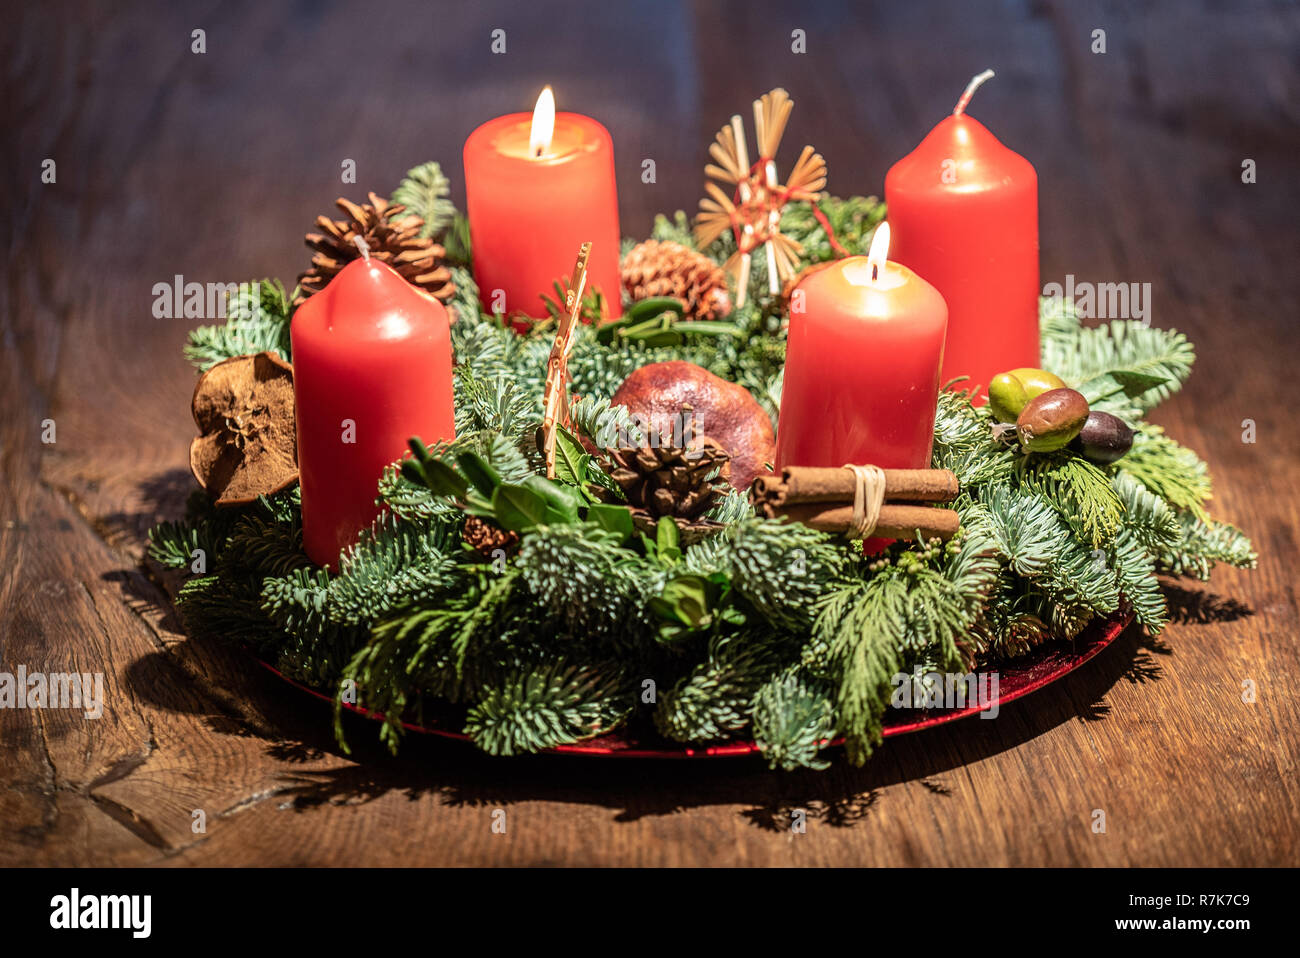 Adventskranz und zwei brennende rote Kerzen an einem hölzernen Tisch Studio  Stockfotografie - Alamy